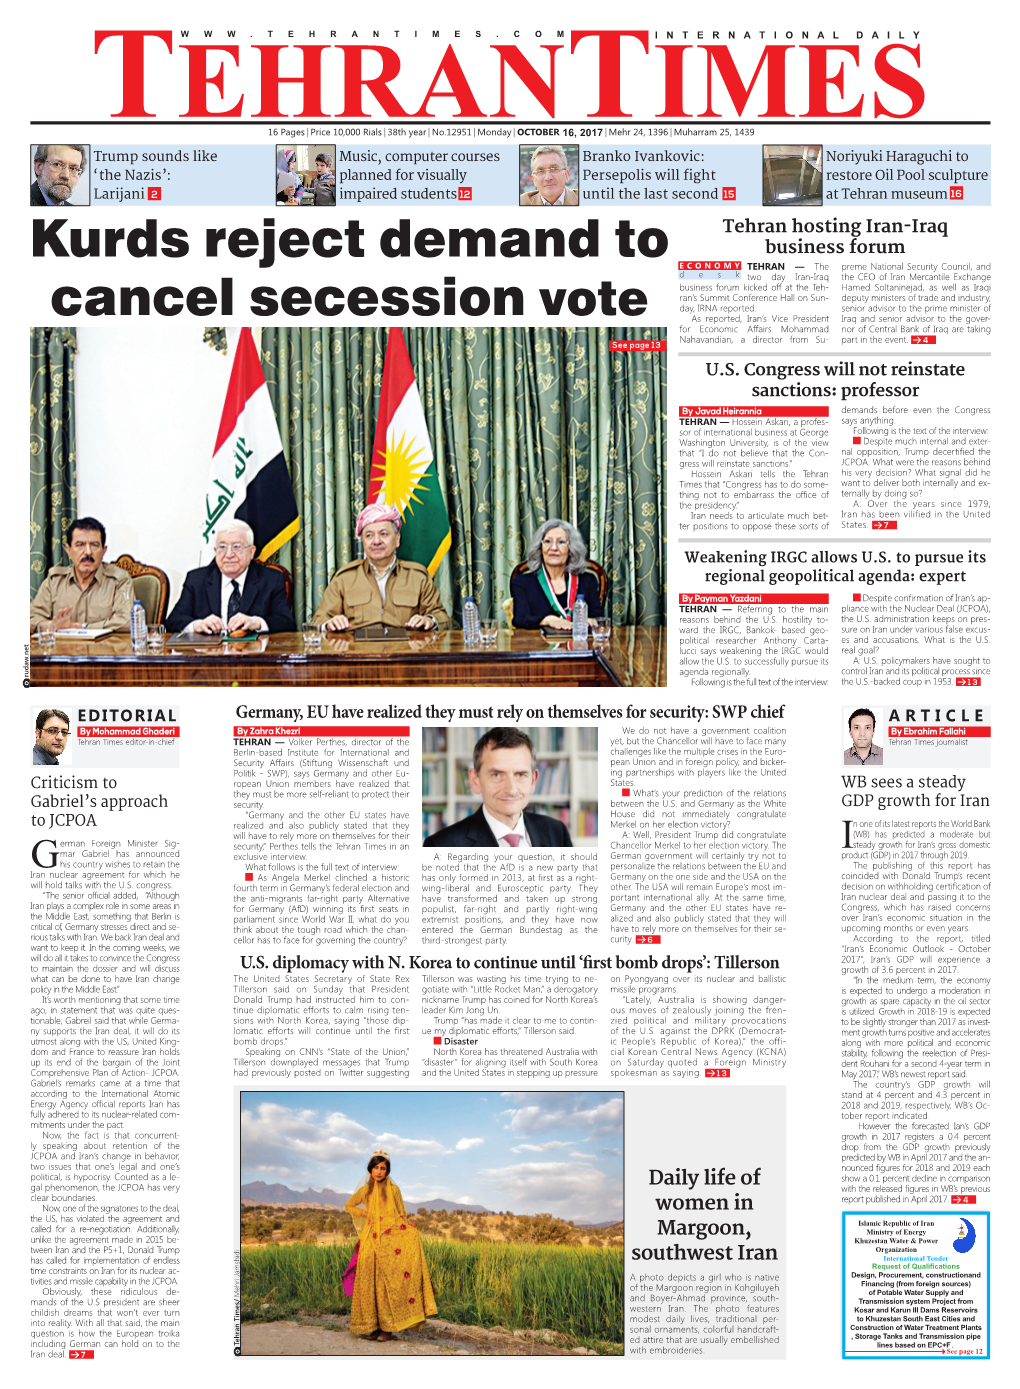 Kurds Reject Demand to Cancel Secession Vote